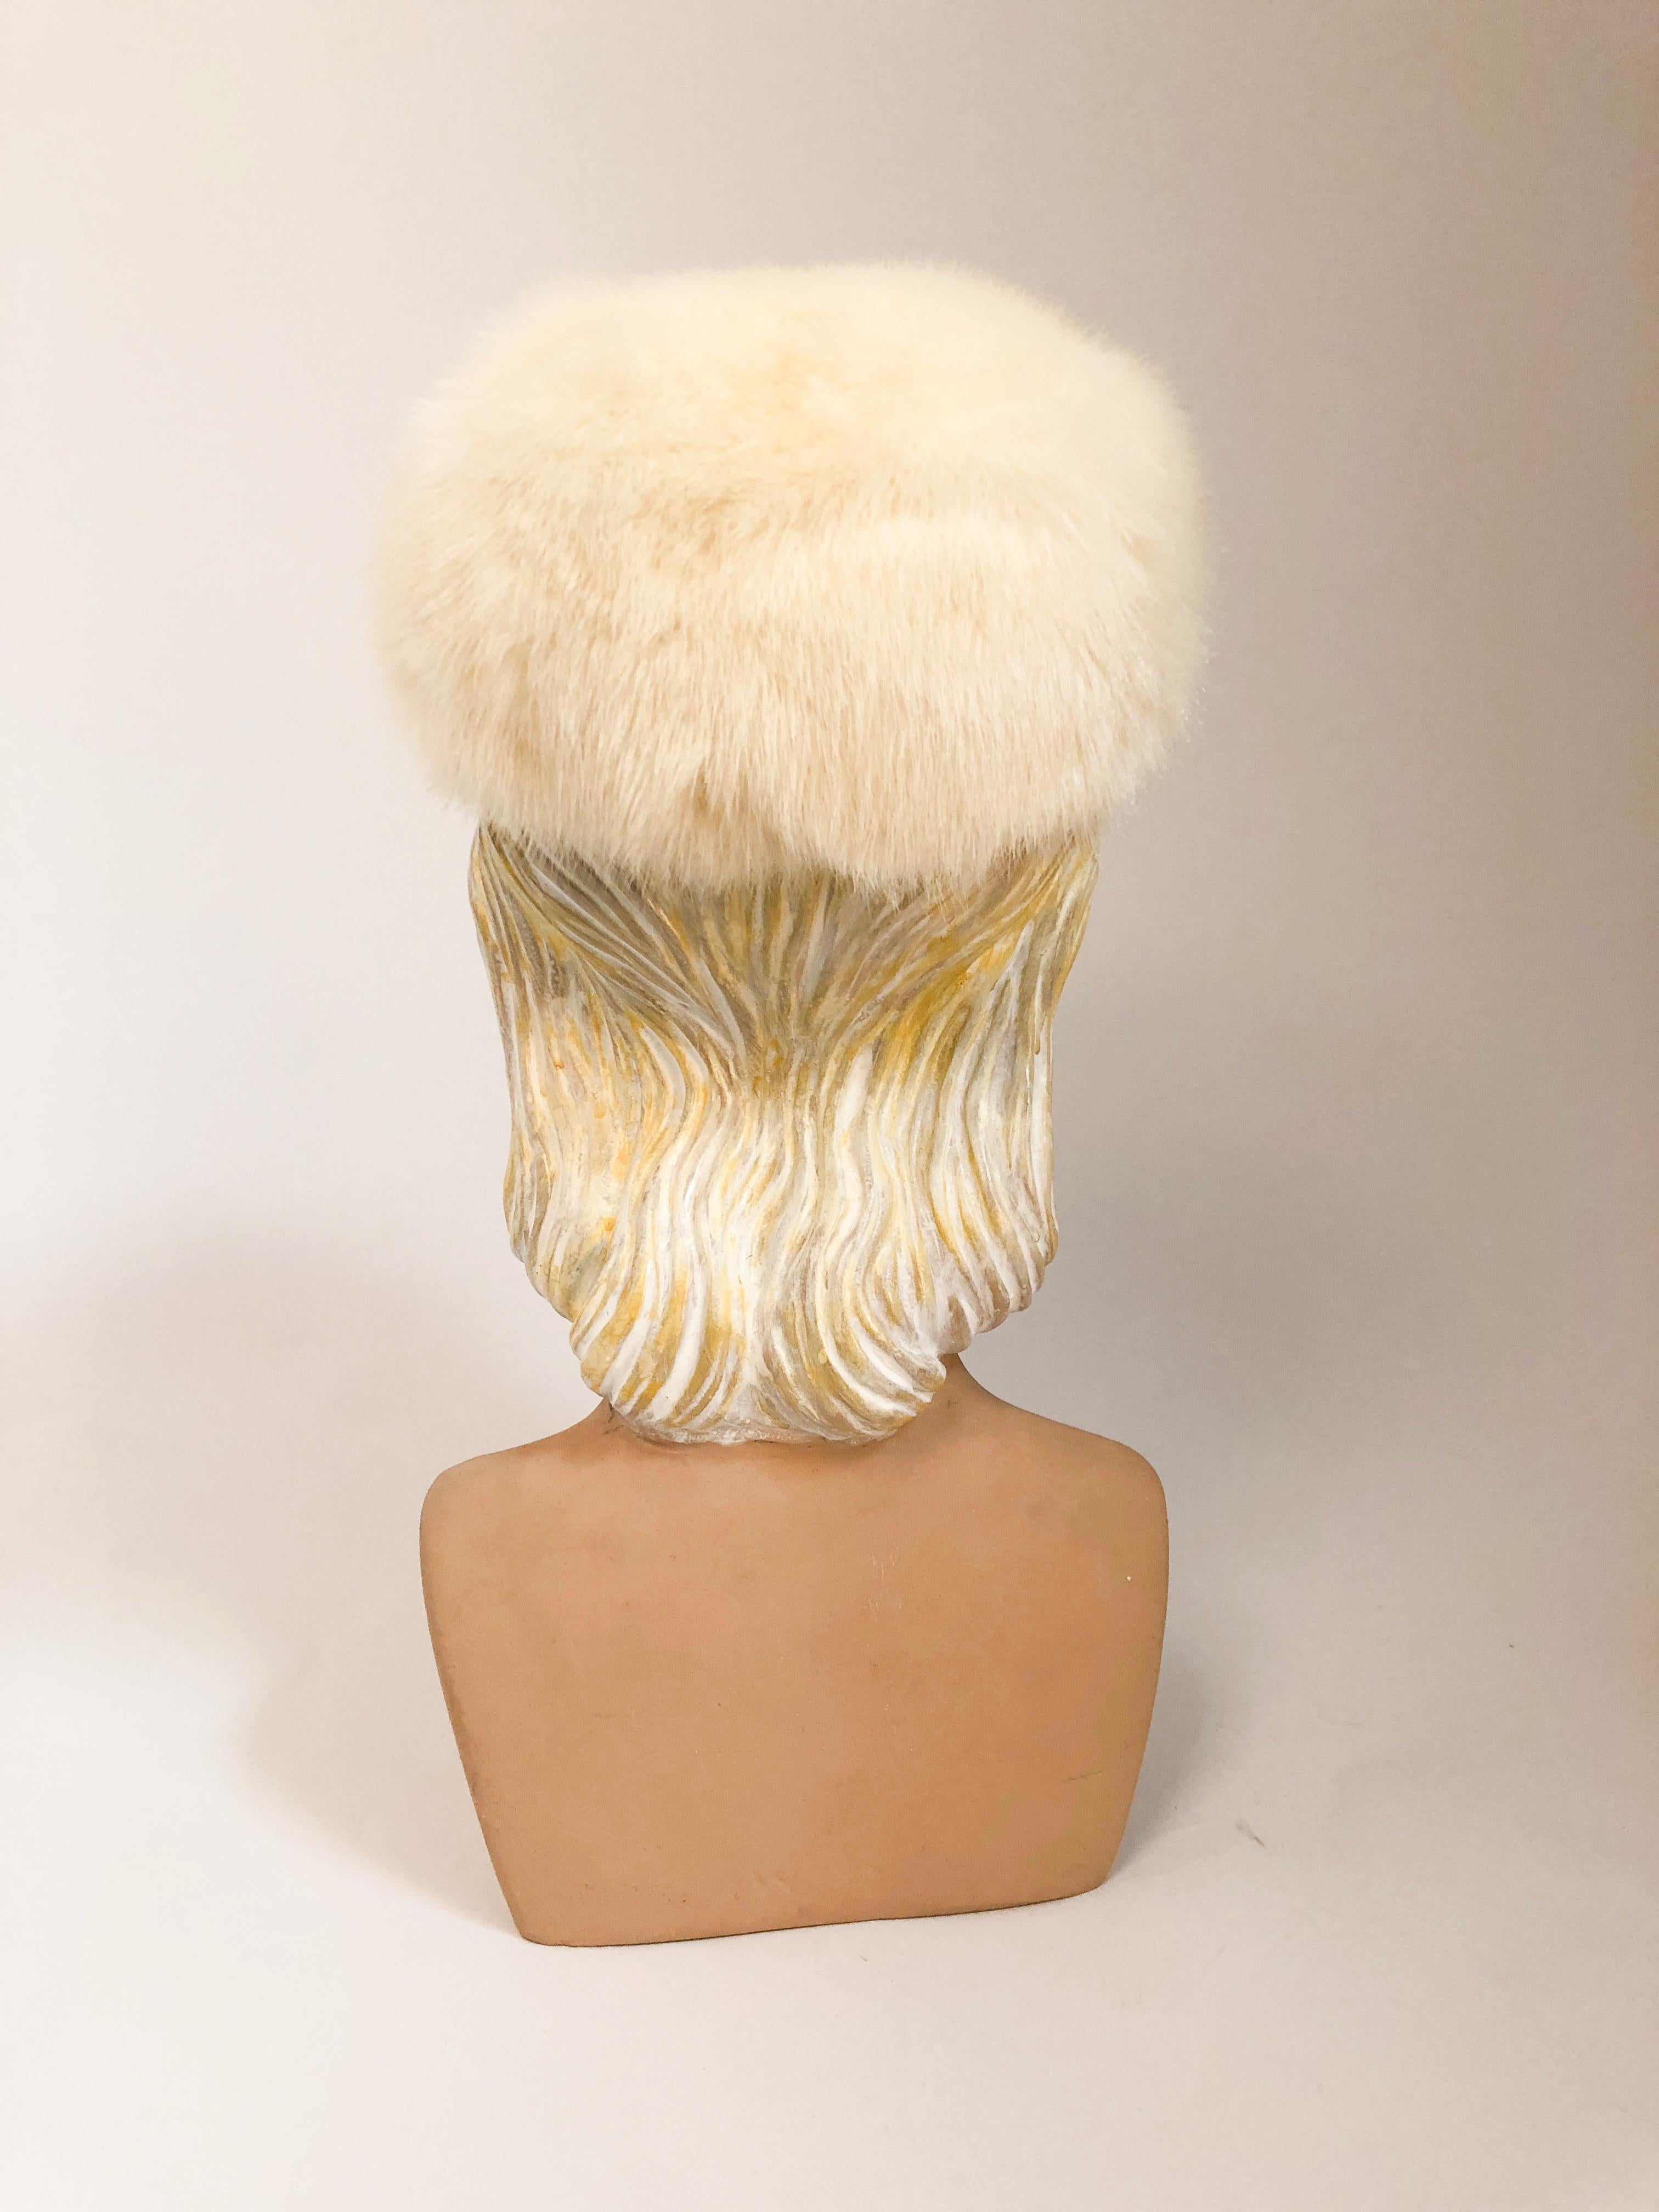 1960s fur hat